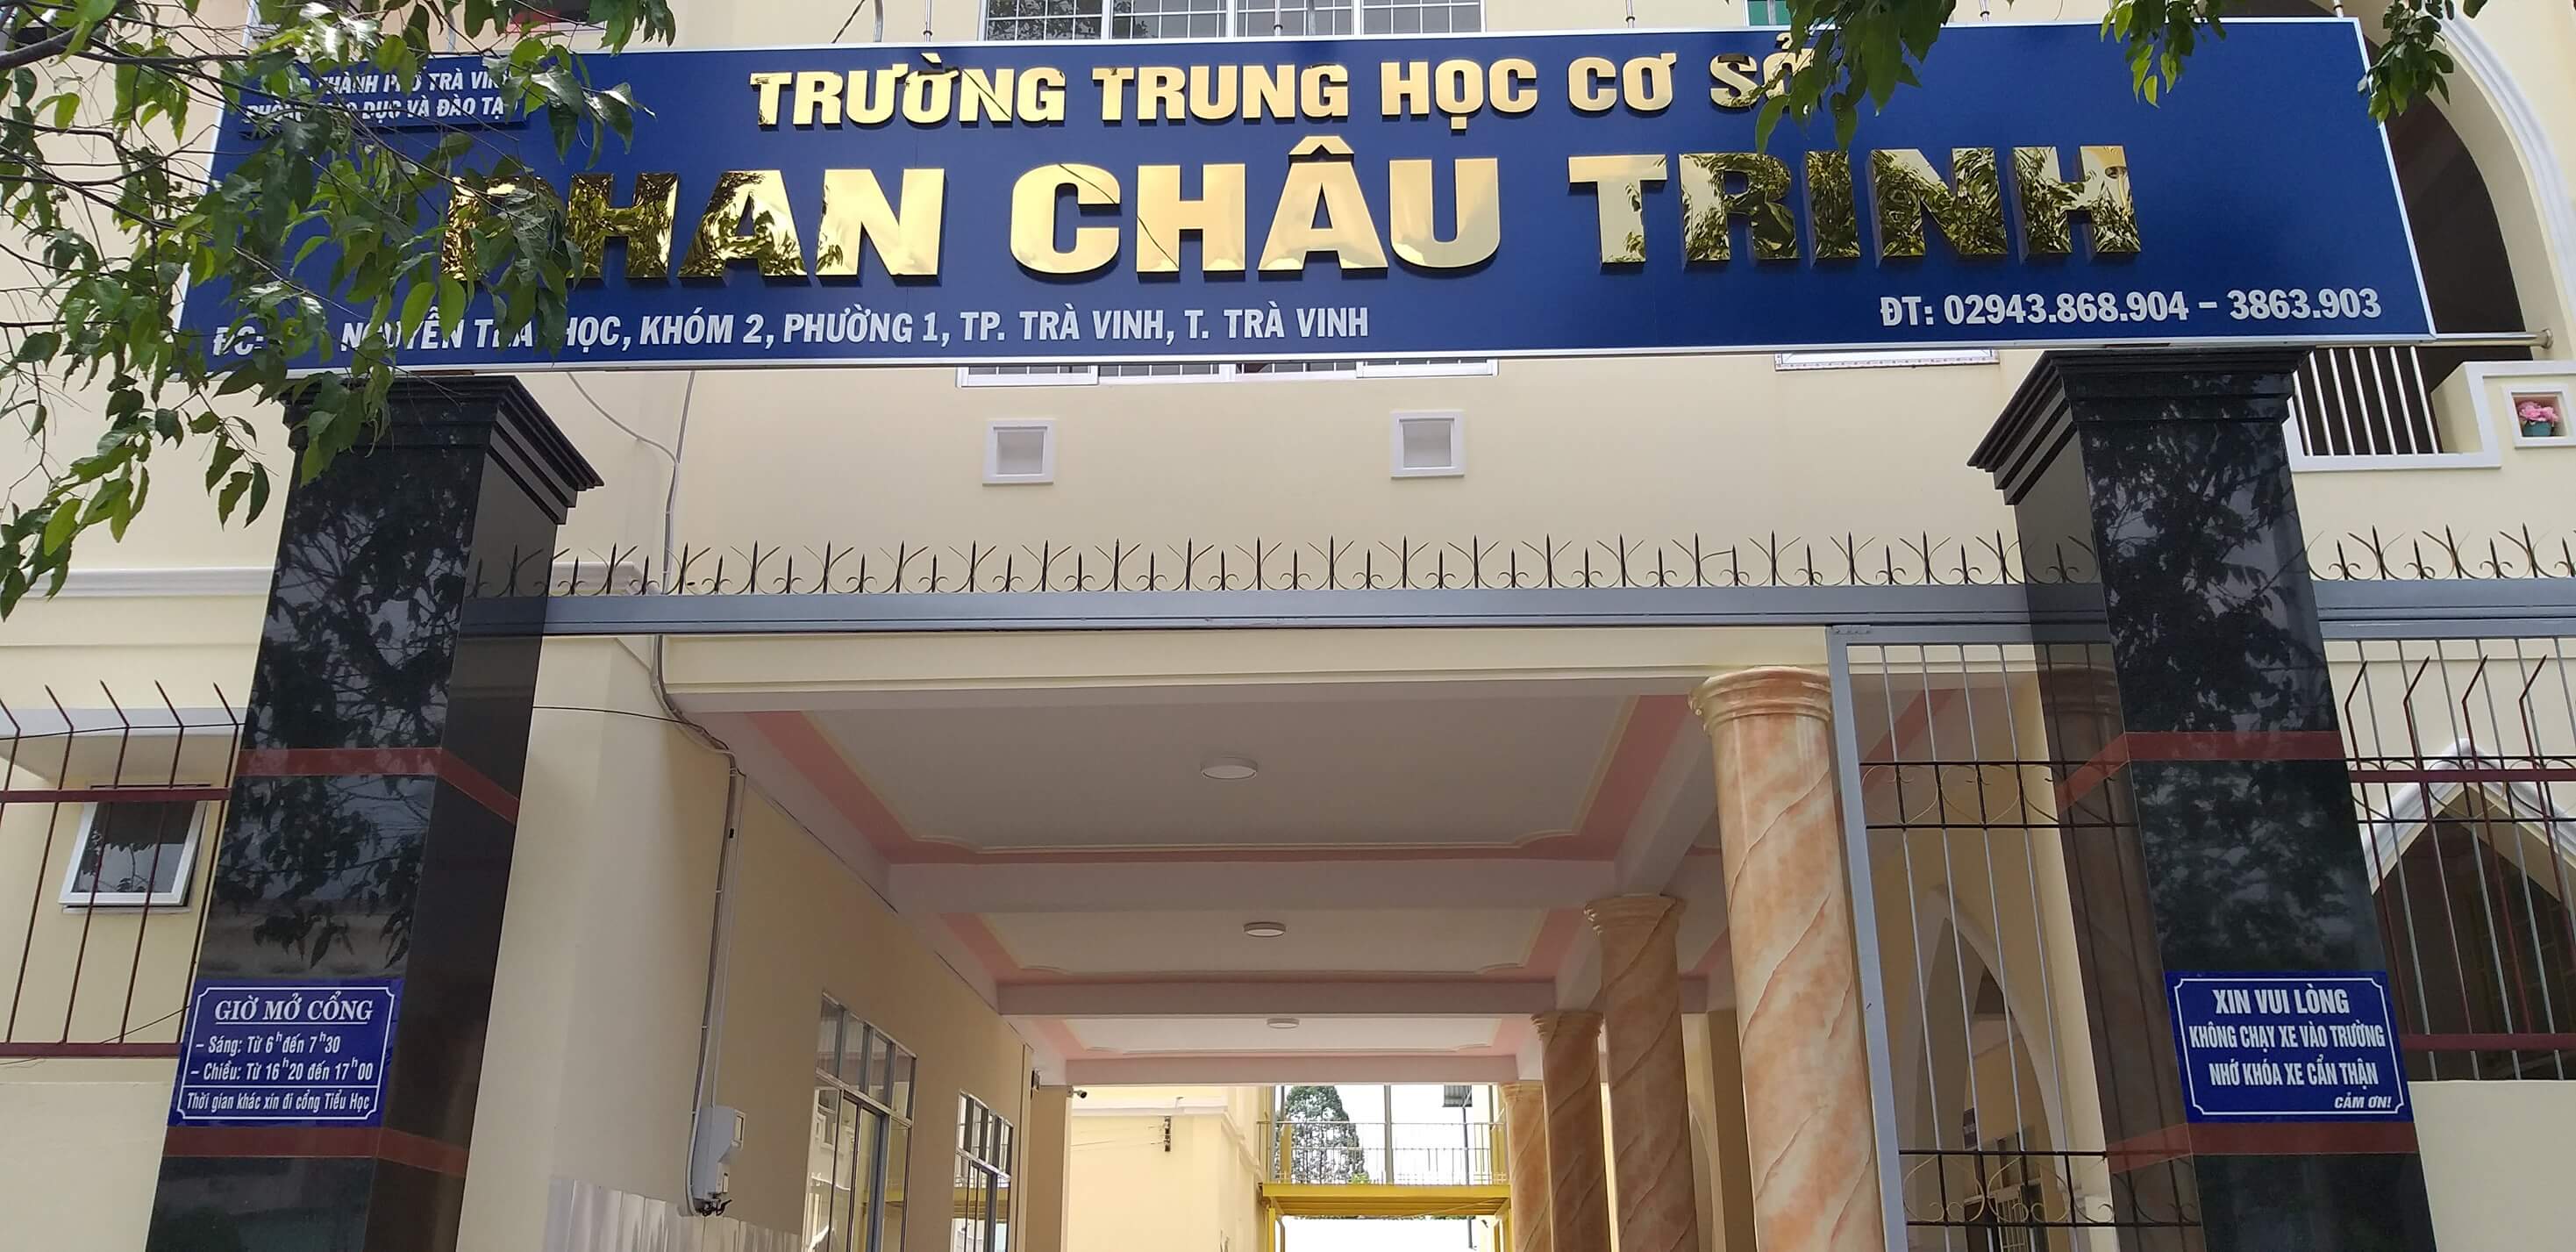 Trường THCS Phan Châu Trinh